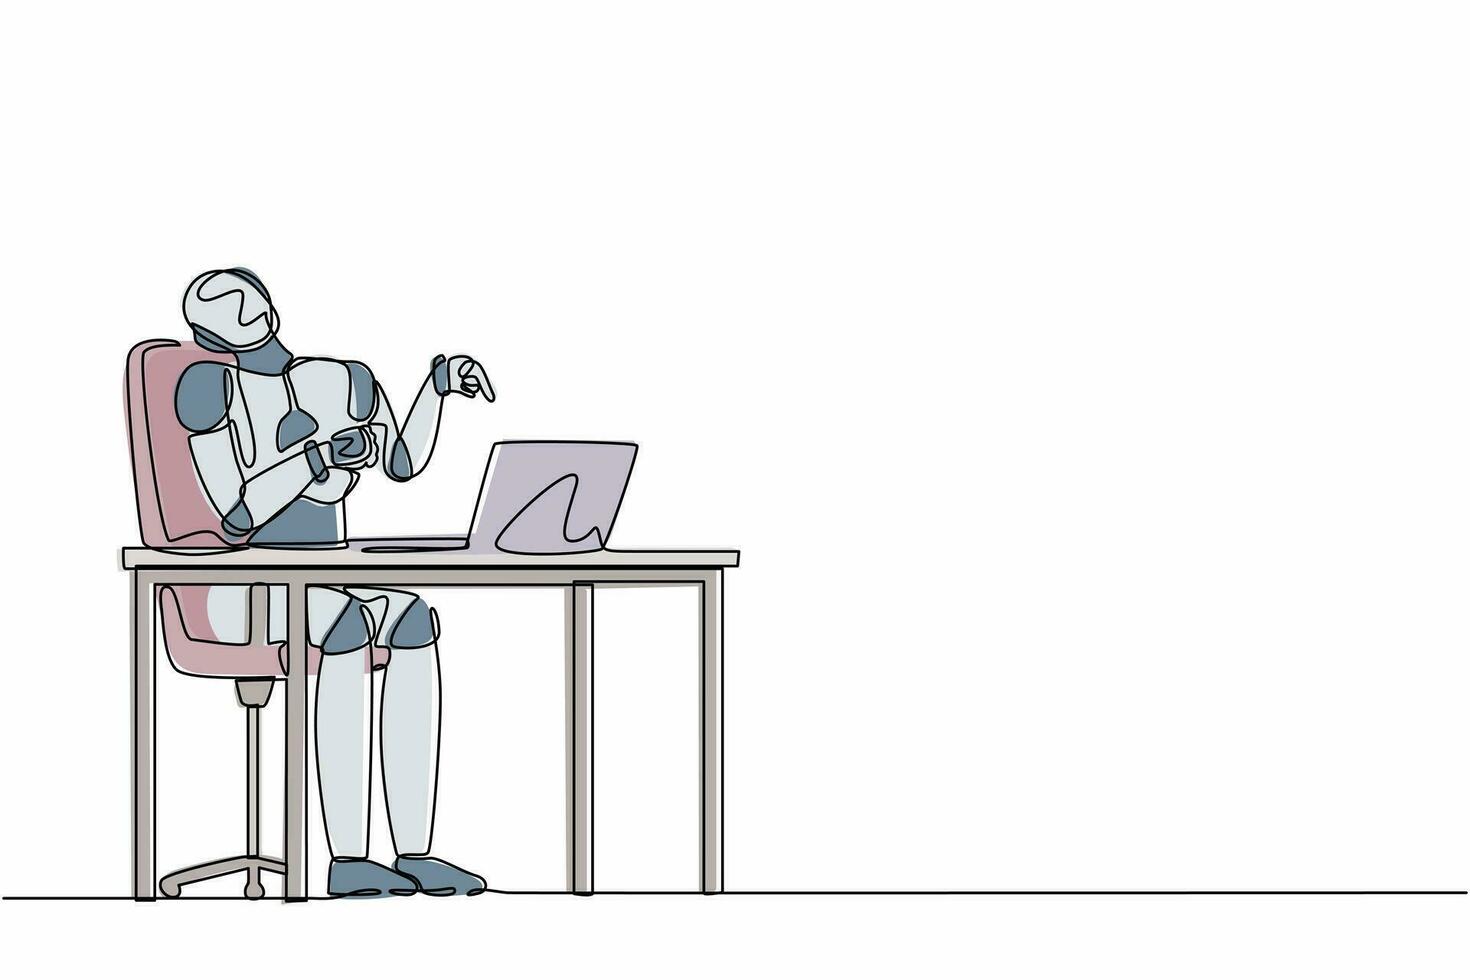 el administrador de robots de dibujo continuo de una línea se ríe en voz alta mientras señala con el dedo a la computadora portátil. organismo cibernético robot humanoide. futuro desarrollo robótico. ilustración de vector de diseño de línea única